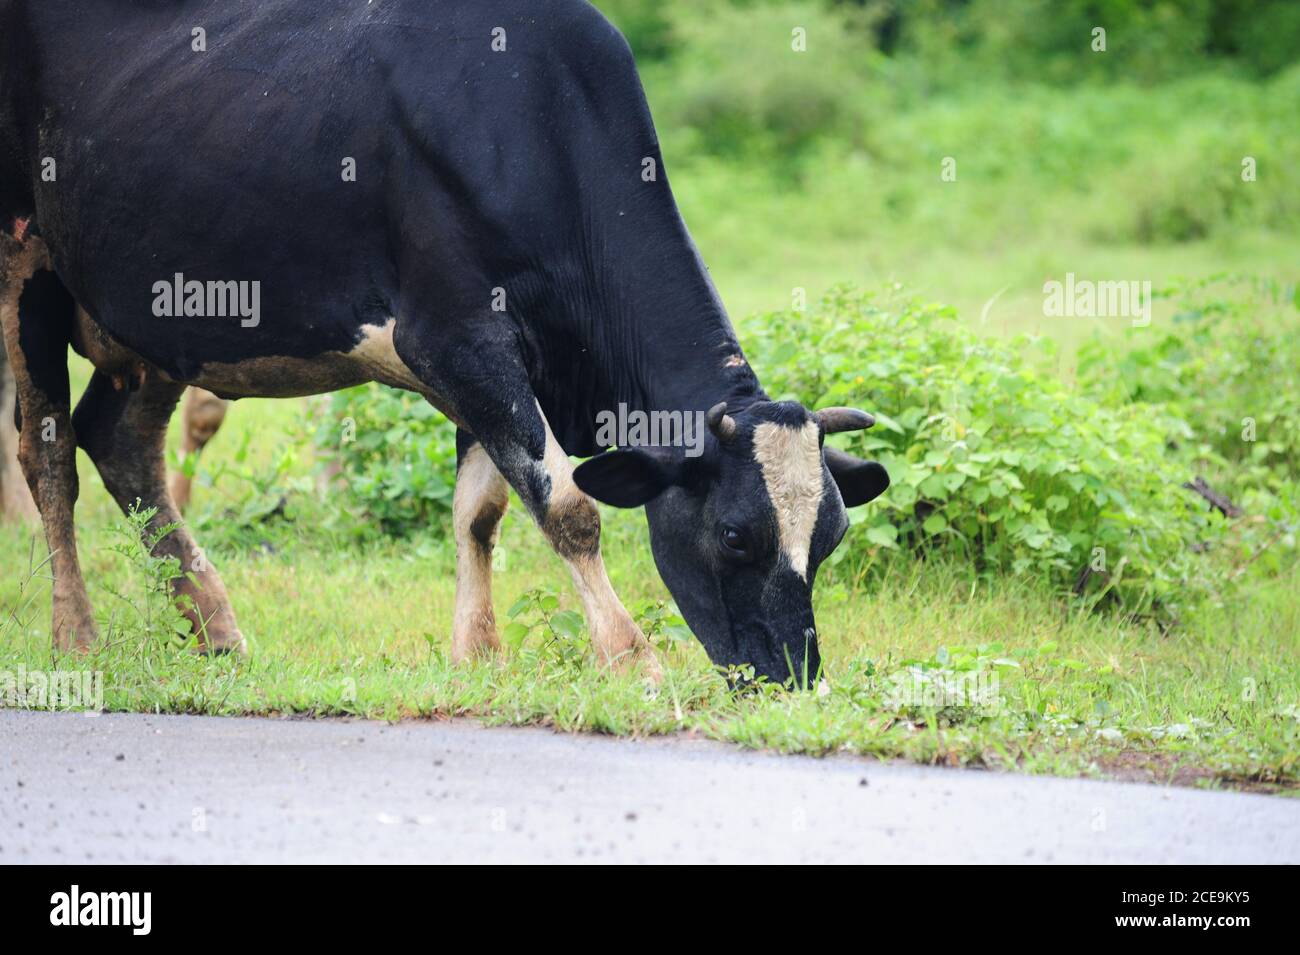 La vaca pastando en la hierba al lado de la carretera. Las vacas femeninas son explotadas por su leche. Esta vaca es moretada en la parte superior del cuello al ser golpeada por una c Foto de stock